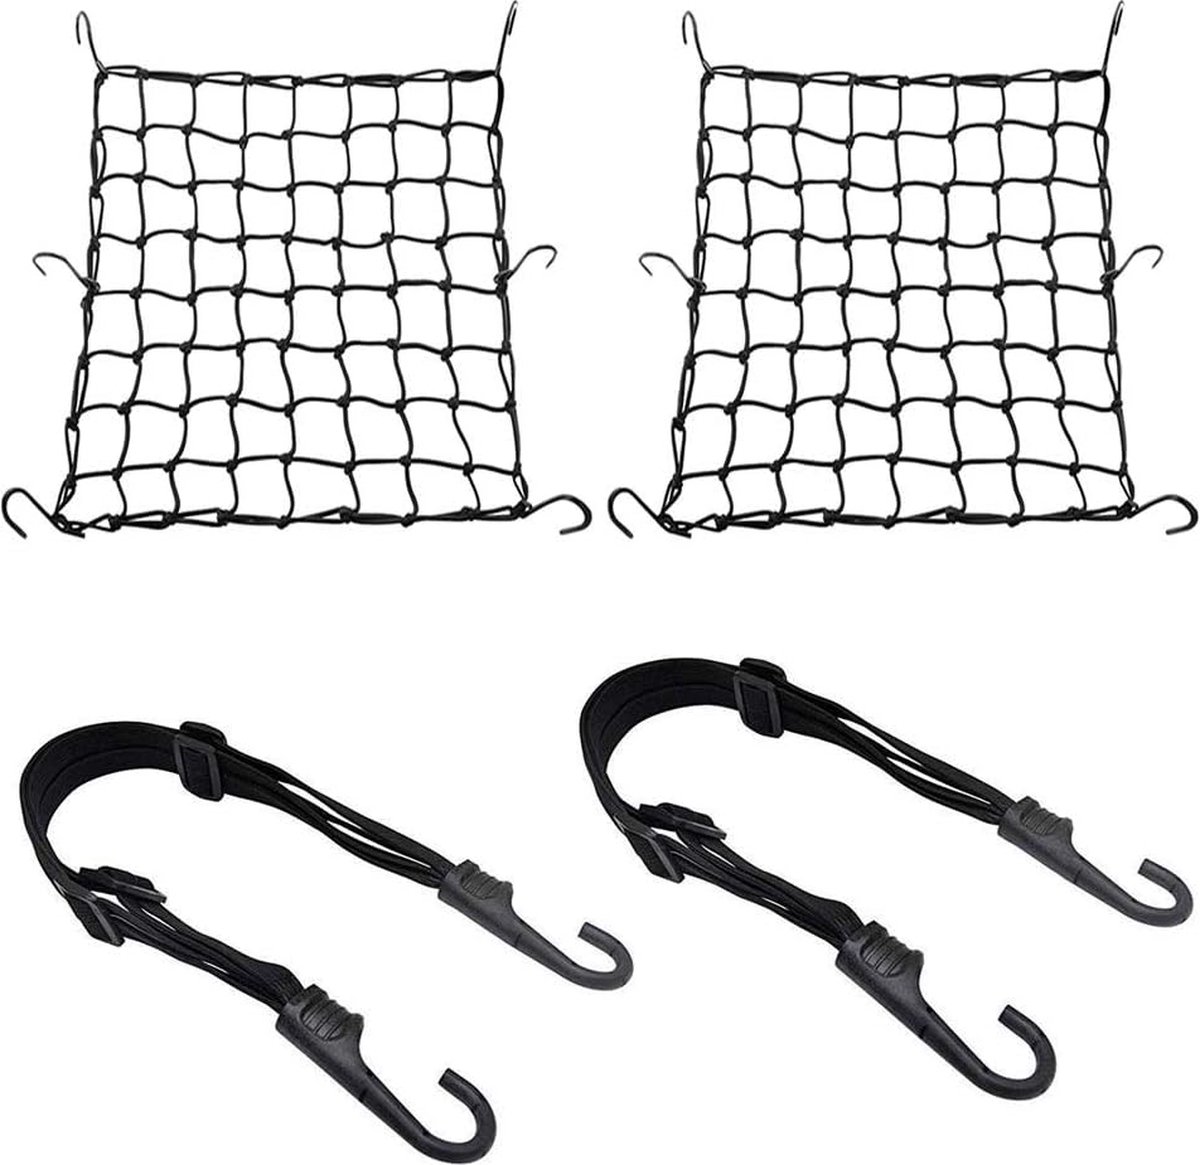 Tendeurs Elastique, cordon élastique, cordon élastique robuste avec  crochet, crochet métallique antichoc, cordon élastique pour camping